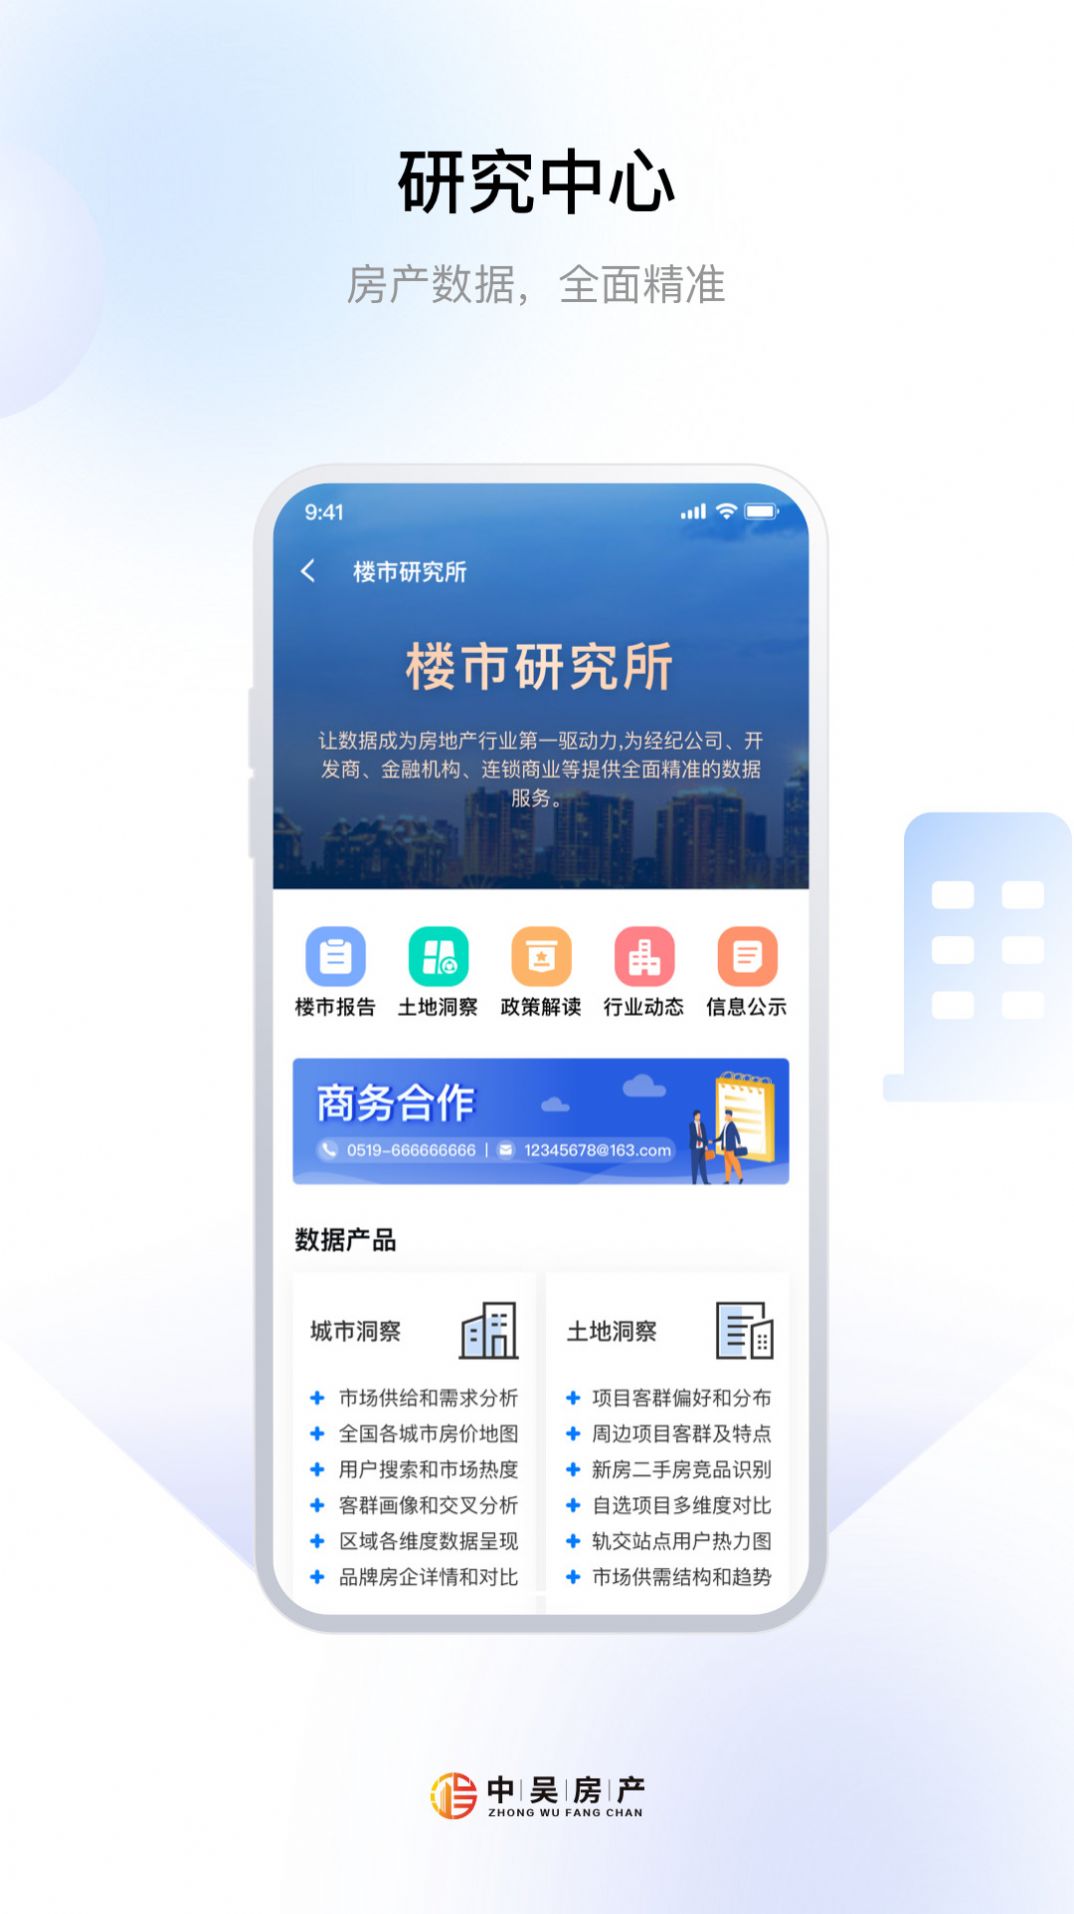 中吴房产app图2